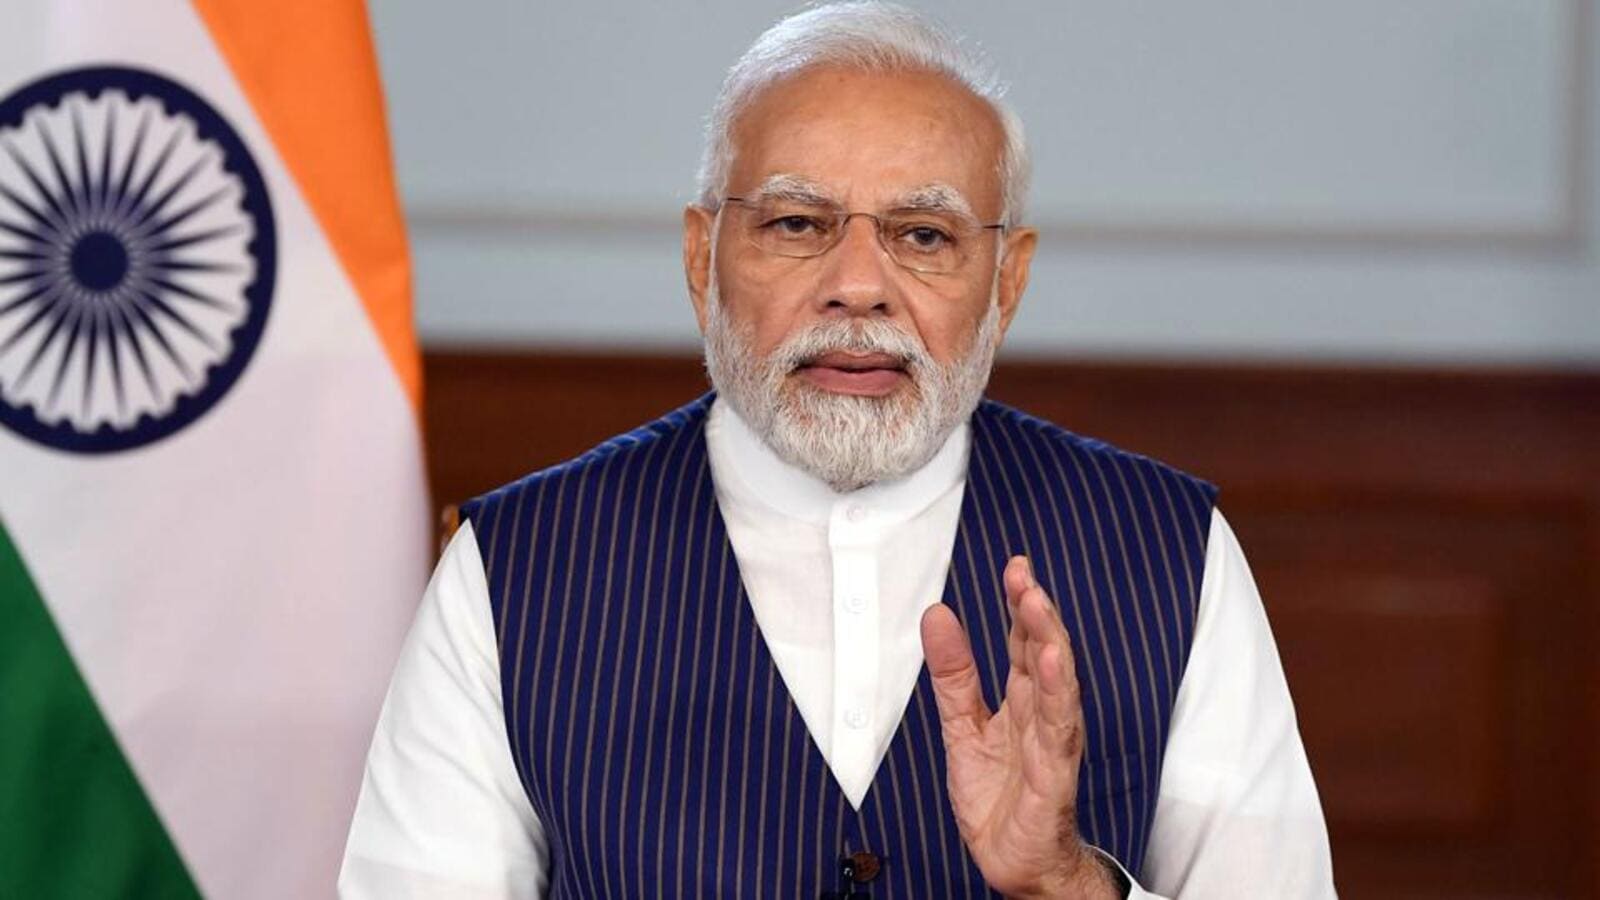 PM Modi membahas masalah energi, iklim, dan ketahanan pangan dengan para pemimpin dunia di KTT G7 |  berita terbaru india